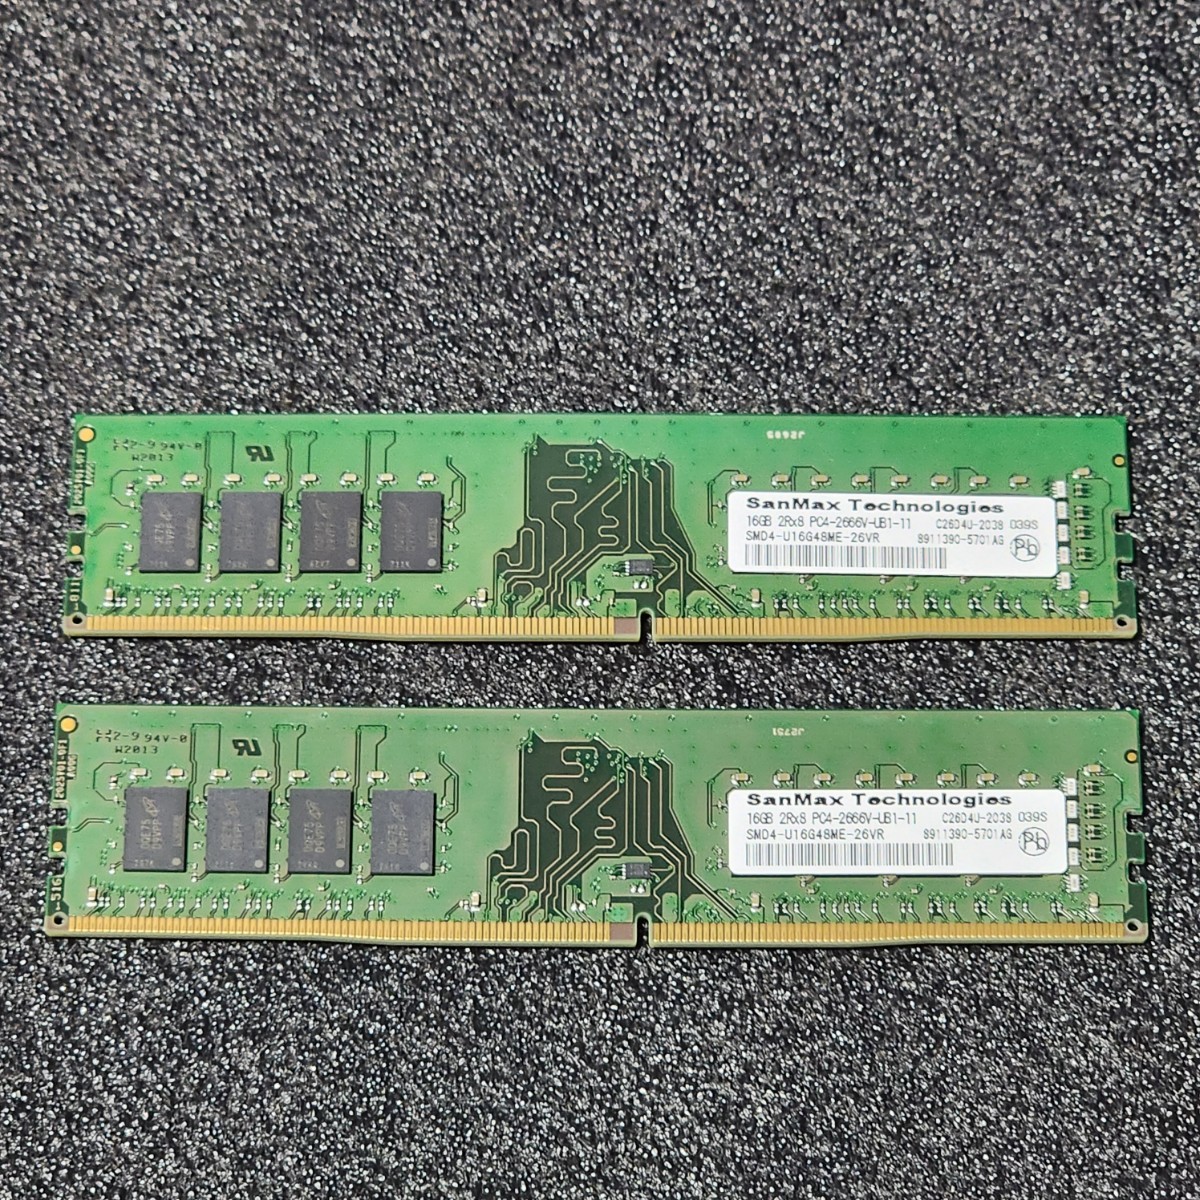 SanMax DDR4-2666MHz 32GB (16GB×2枚キット) SMD4-U16G48ME-26VR 動作確認済み デスクトップ用  PCメモリ